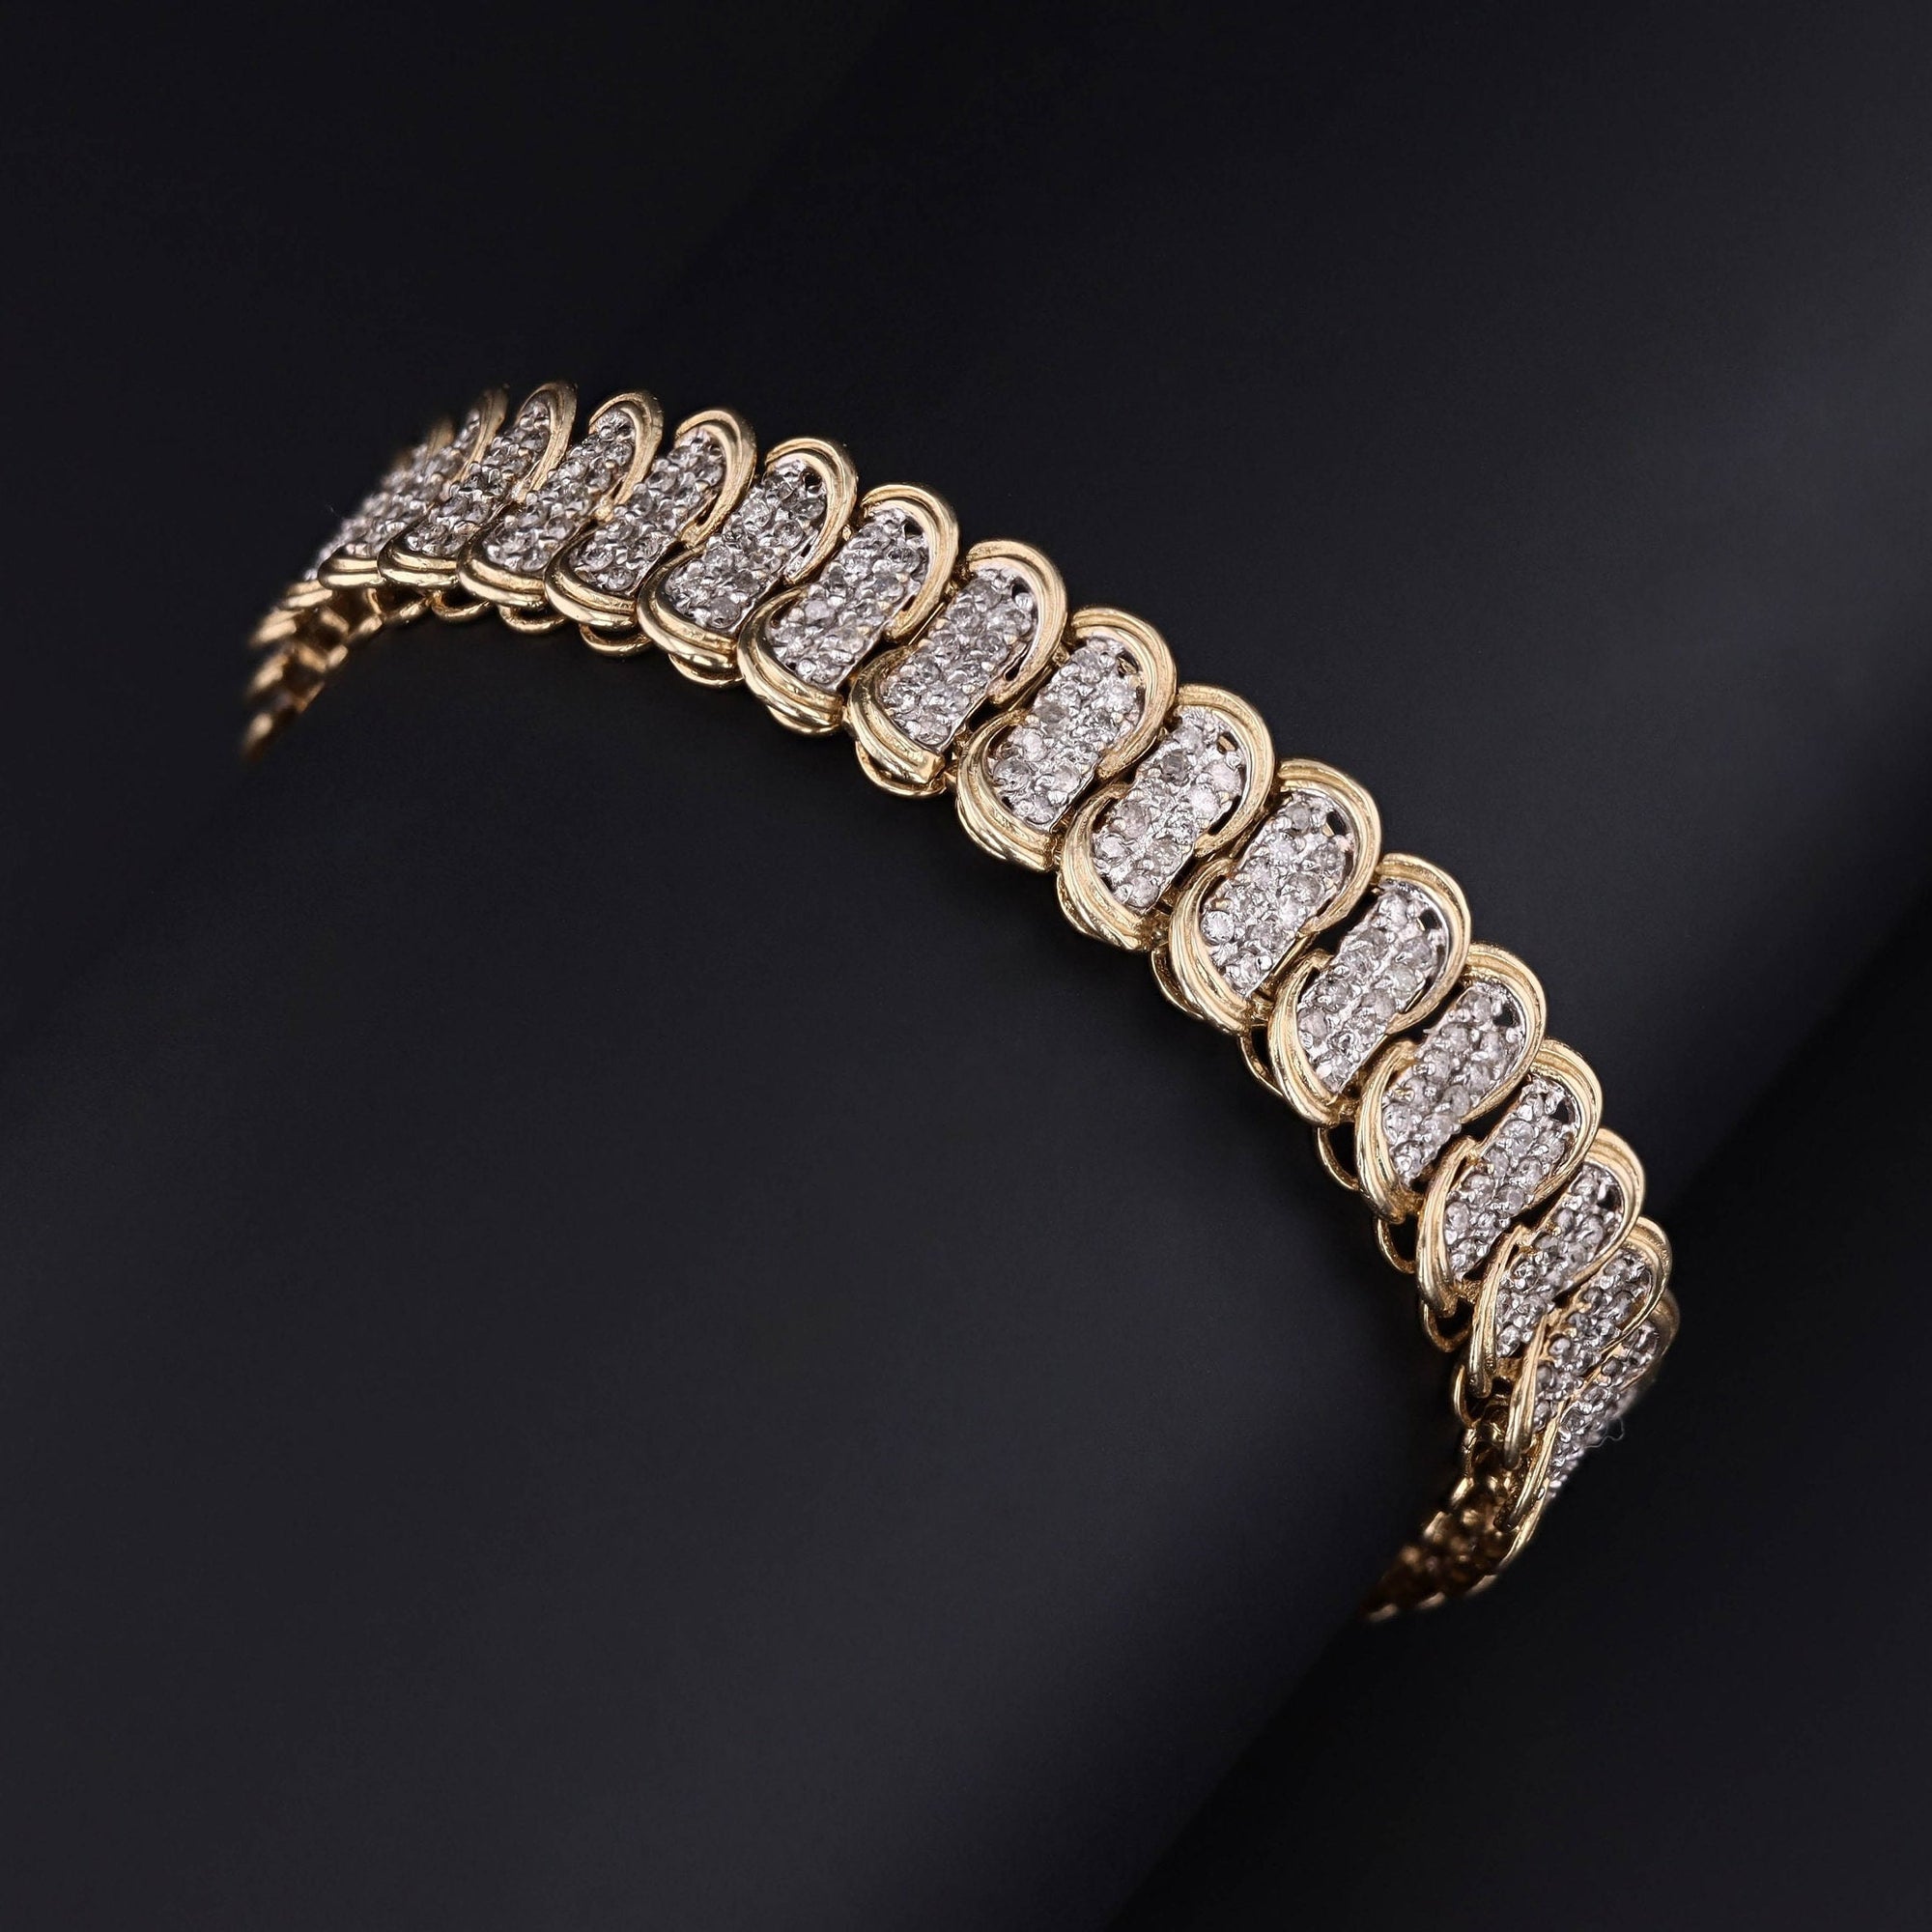 Vintage Diamond Bracelet of 10k Gold